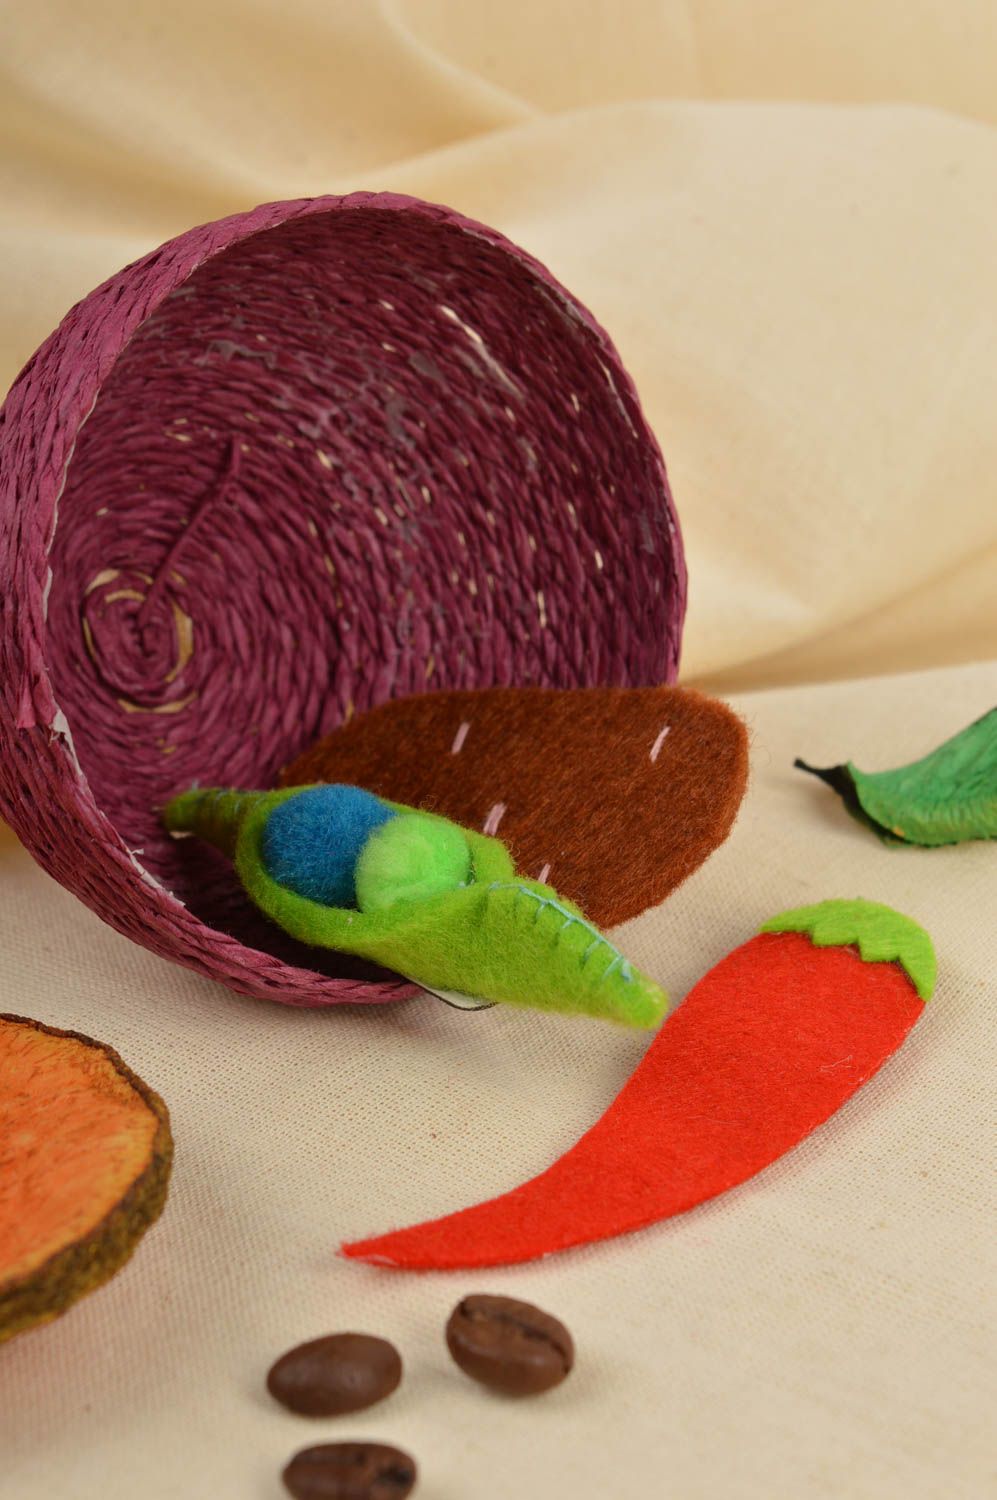 Магниты ручной работы магниты для детей фетровые игрушки в виде овощей комплект фото 1